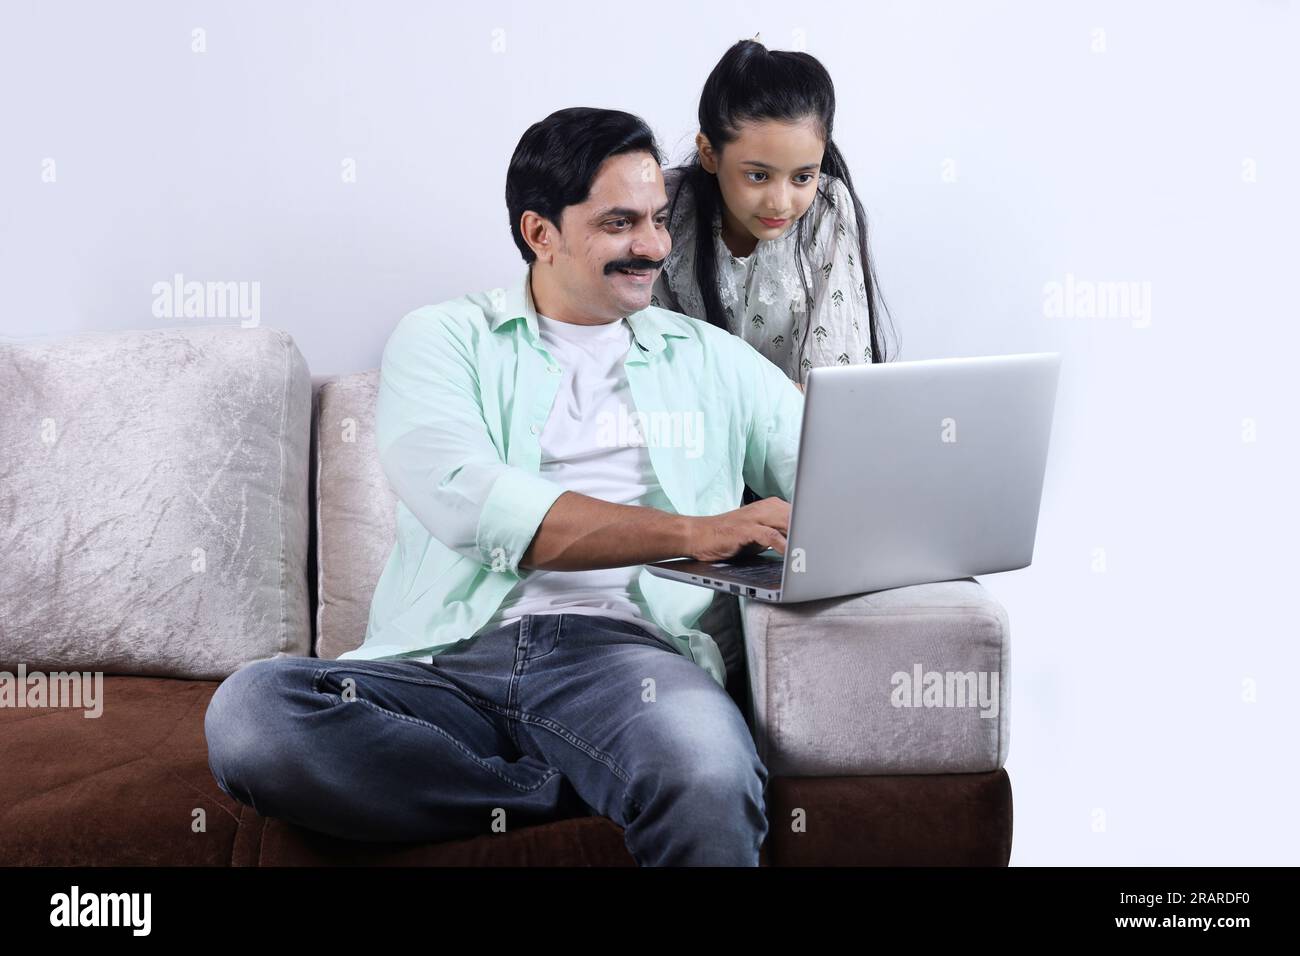 Glückliche indische Familie mit alleinerziehendem Vater und Tochter, die mit einem Laptop surfen und eine angenehme Zeit zusammen verbringen. Die Familie schaut sich das Notebook an. Stockfoto